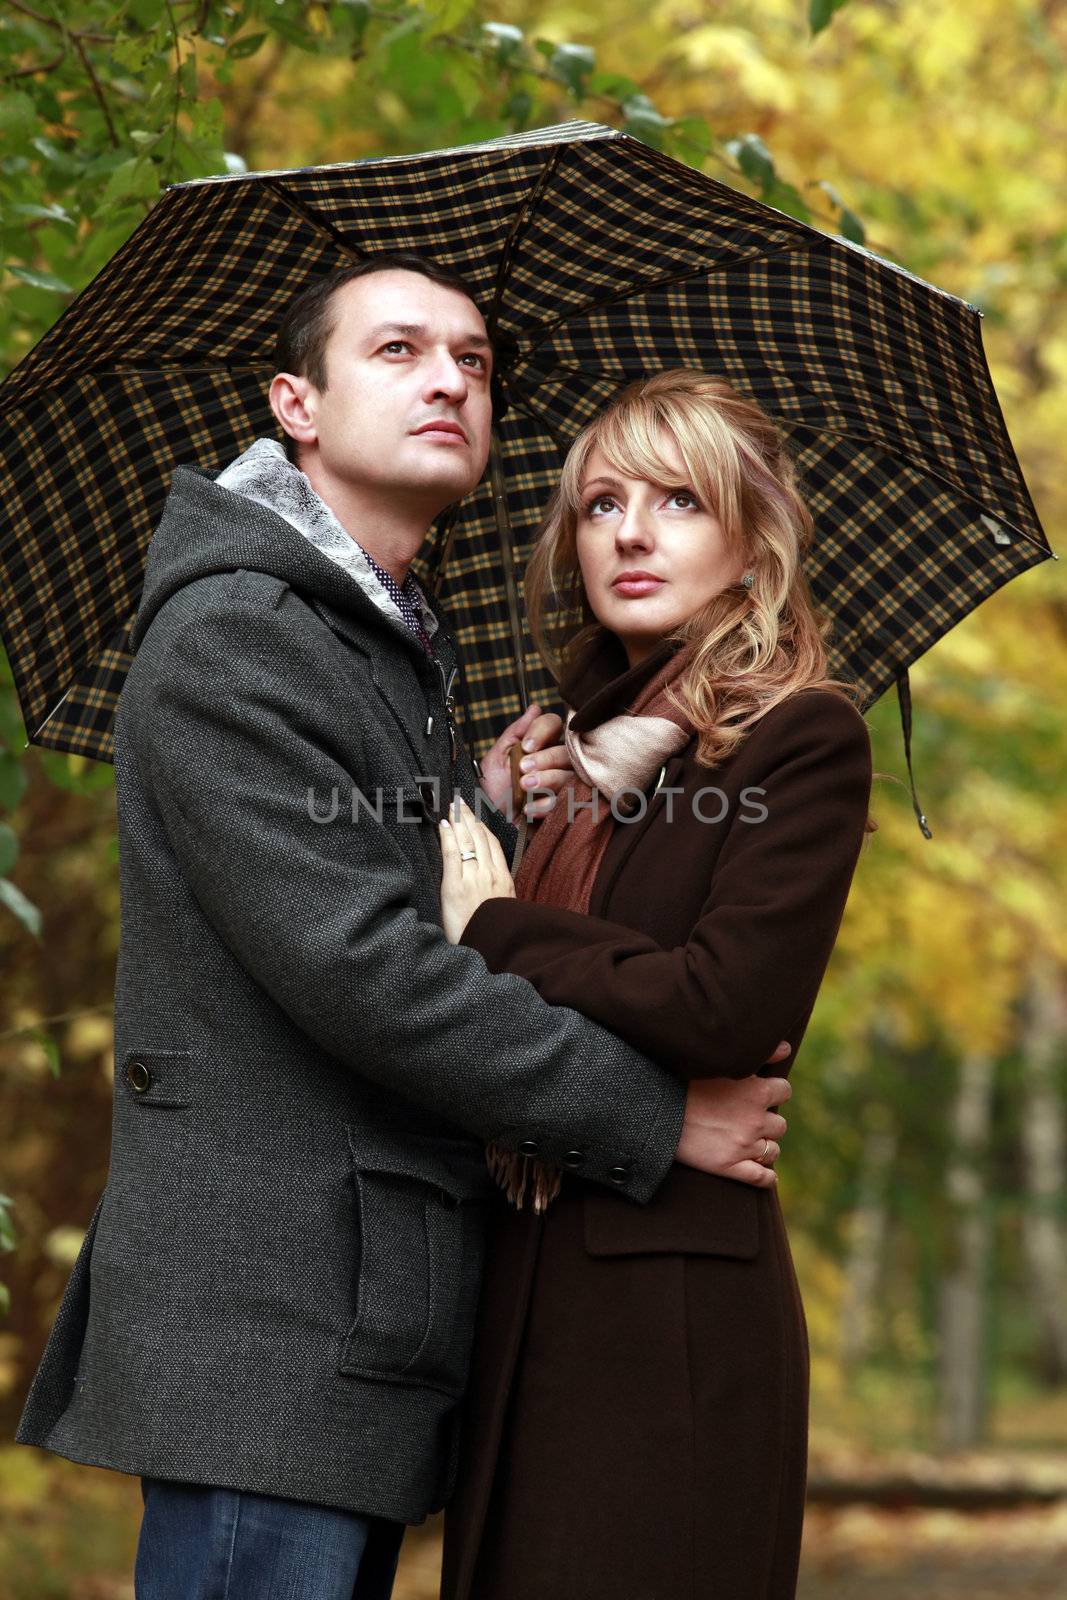 Couple in autumn park under a umbrella